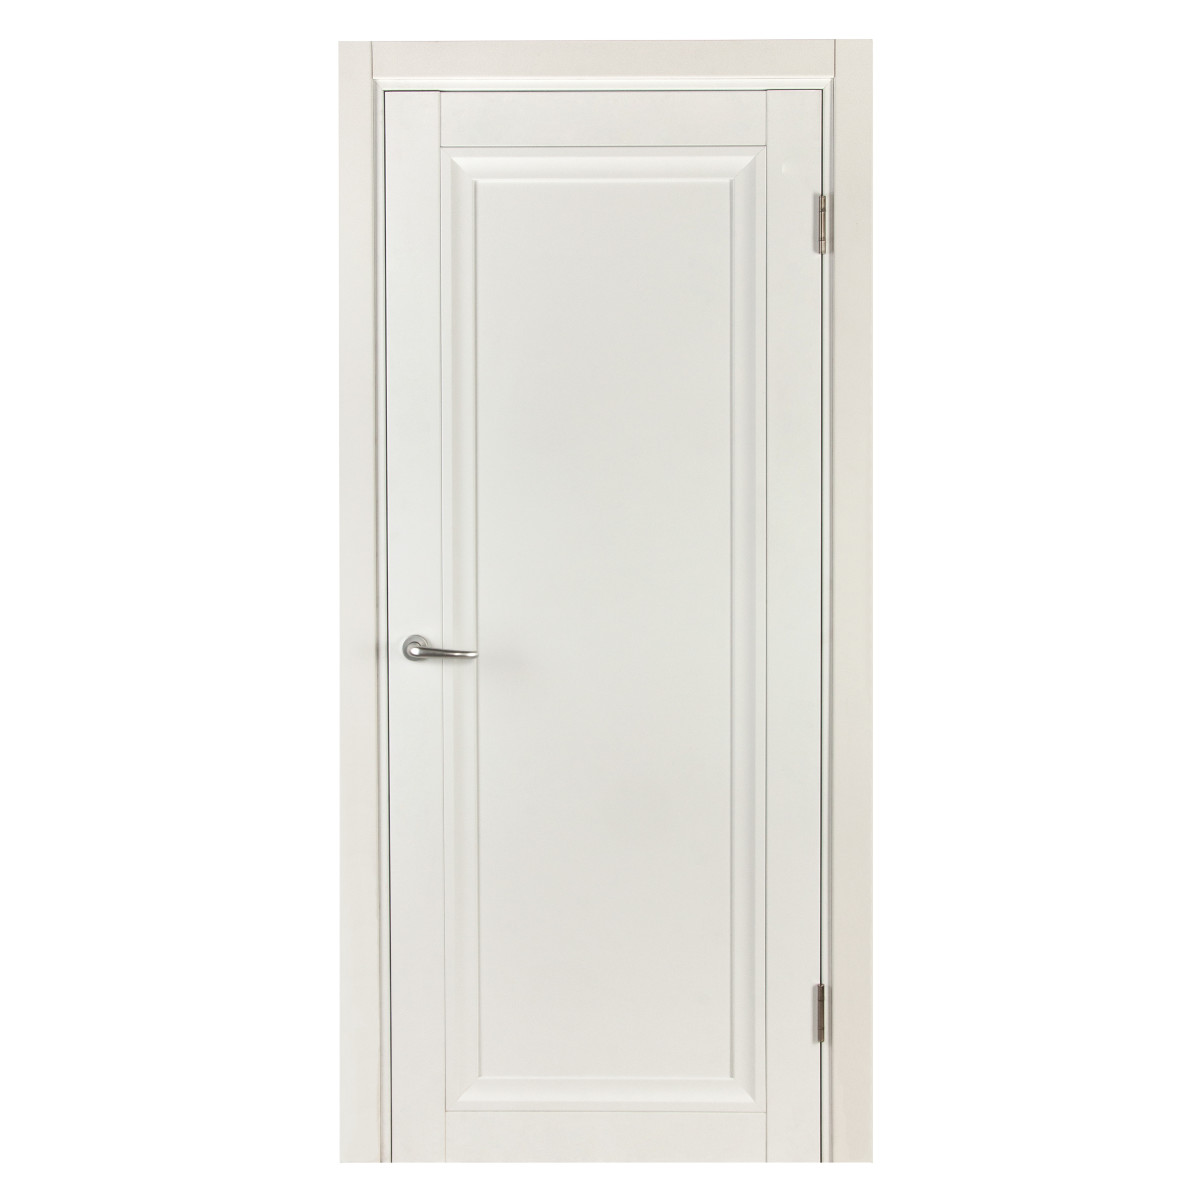 Дверь межкомнатная Нобиле 80х200 см, цвет цвет белый, с замком